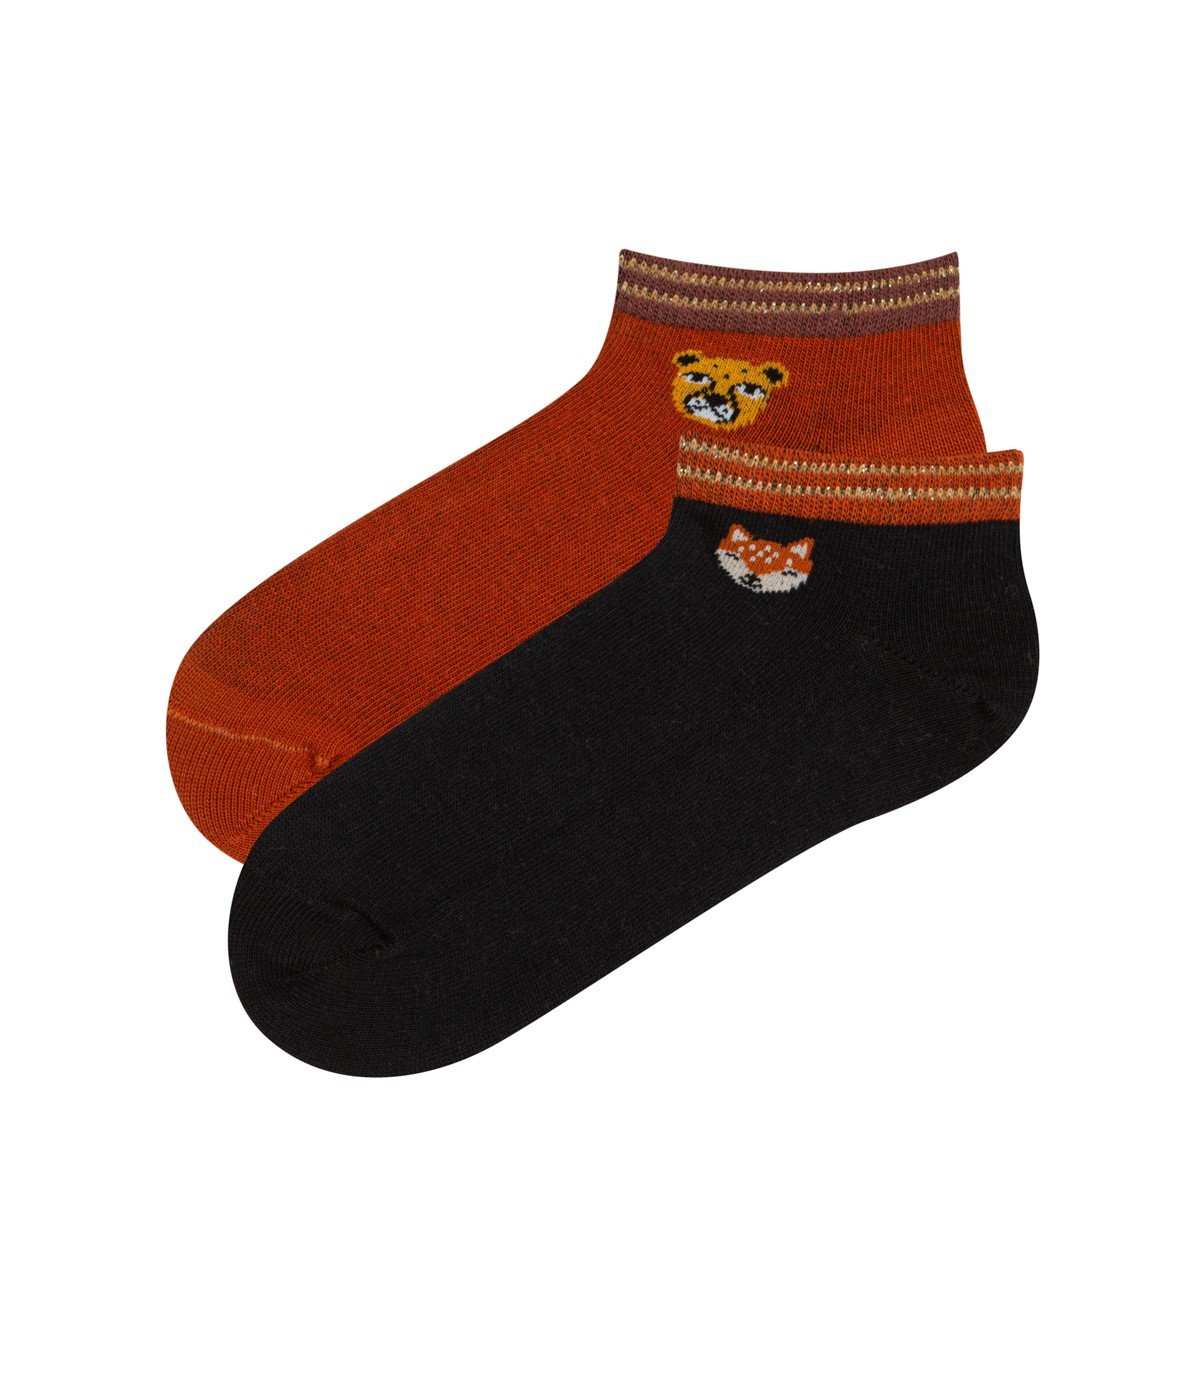 Fox 2in1 Liner Socks